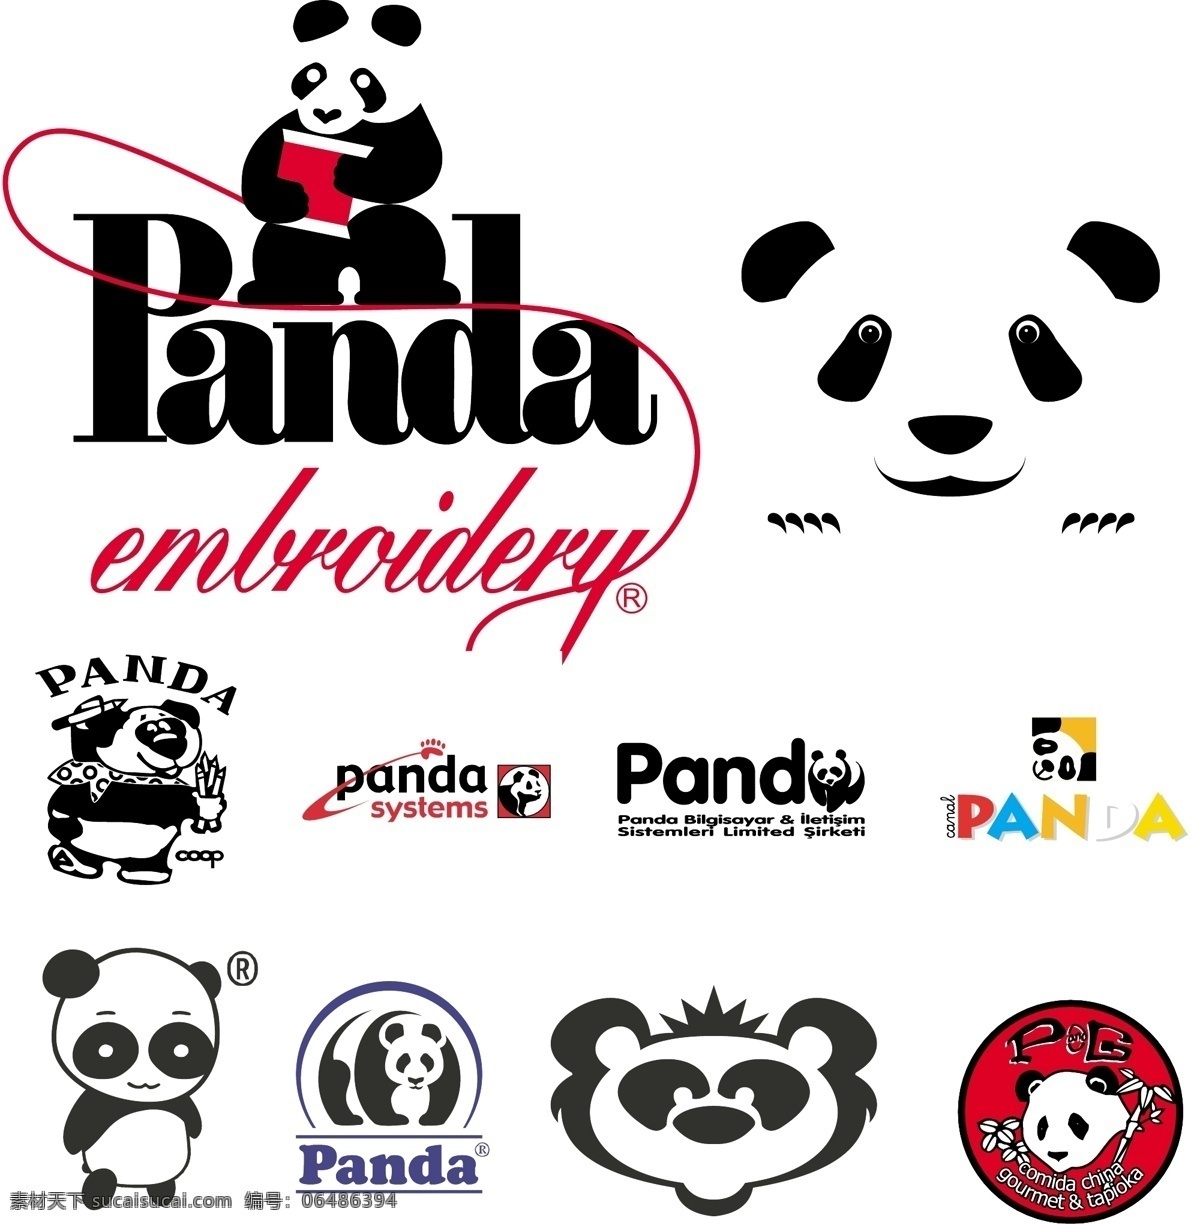 各式各样 矢量 熊猫 panda 2010 年 最新 可爱 卡通 十二生肖 动物 人物 元素 系列 总 收藏 合集 标致logo 矢量图库 图形图标 生物世界 家禽家畜 矢量动物元素 标识标志图标